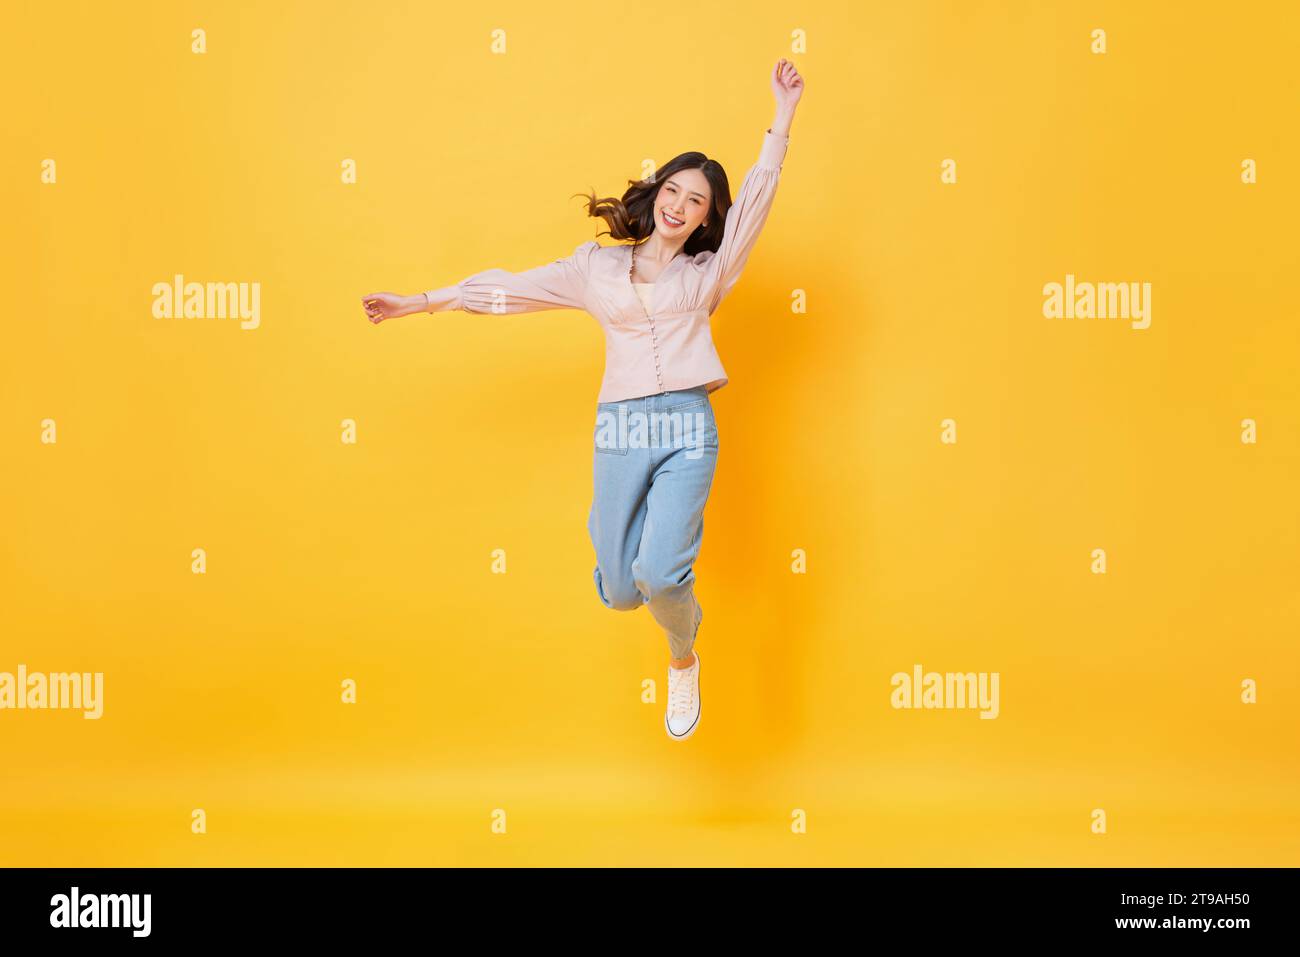 Fröhliche asiatische Frau in lässiger Kleidung lächelnd und springend mit Händen nach oben in bunter gelber Farbe isolierte Hintergrundaufnahmen im Studio Stockfoto